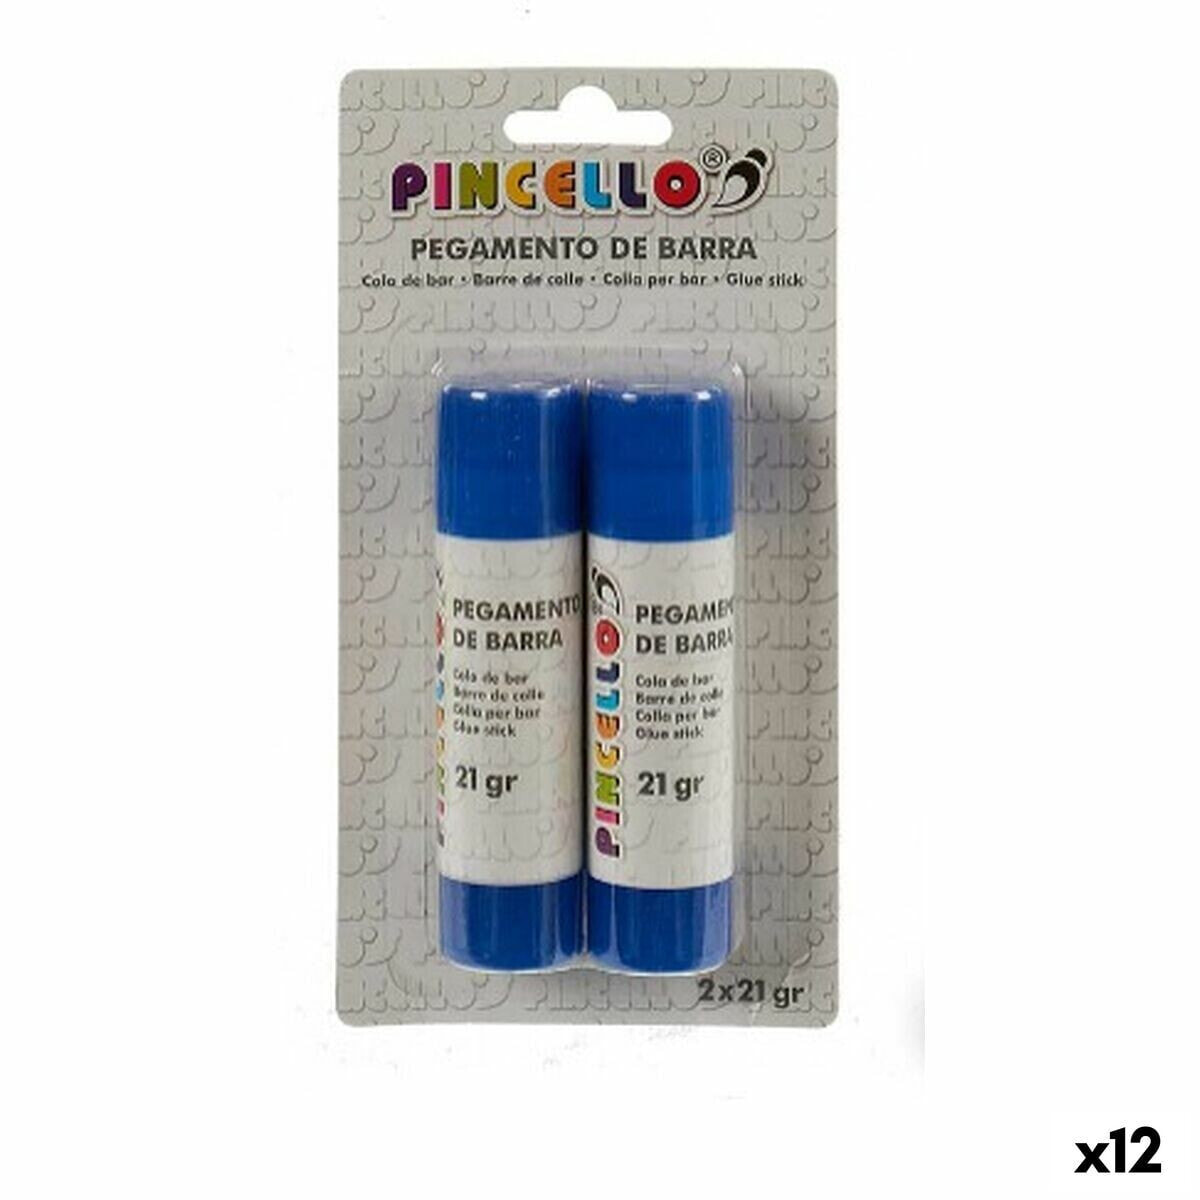 Glue stick 21 g 2 Pieces (12 Units)